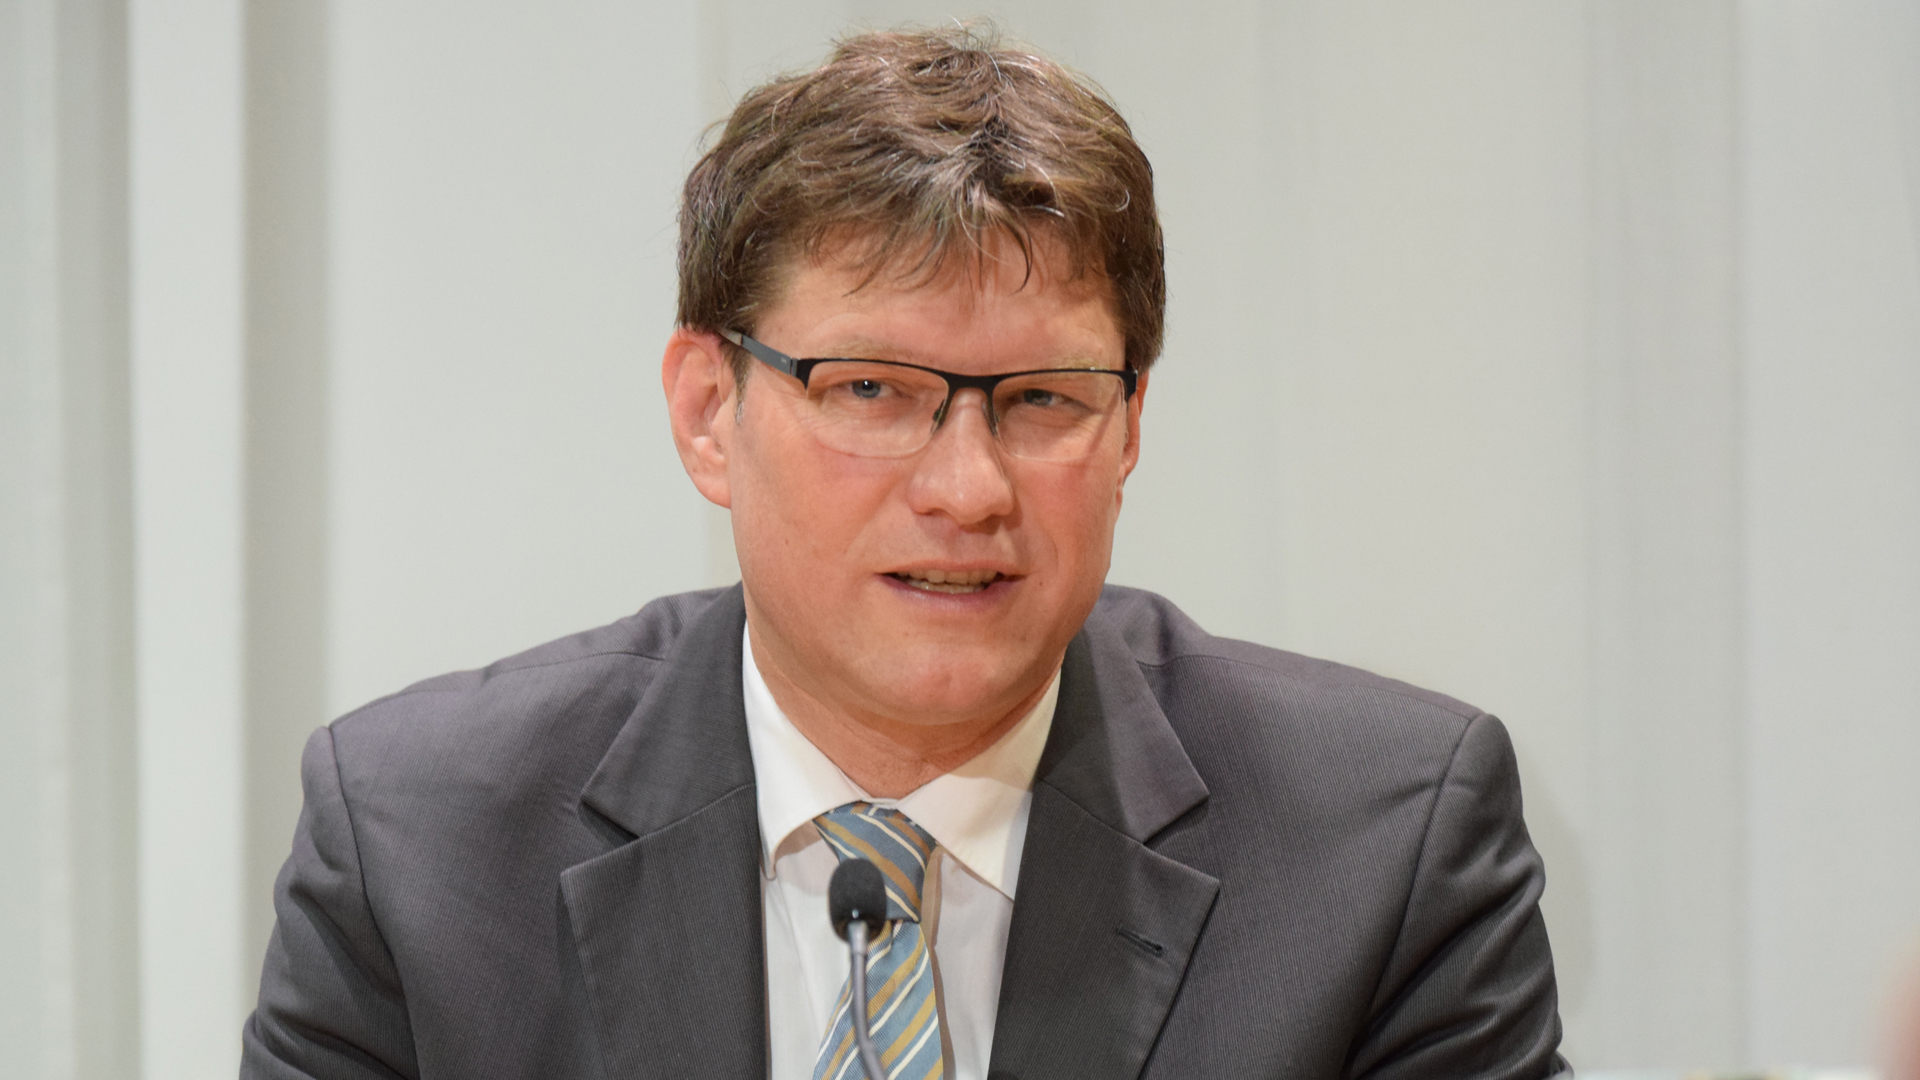 Uwe Heimowski, Politikbeauftragter der Deutschen Evangelischen Allianz, ist gegen eine Anhebung der Hartz-IV-Sätze